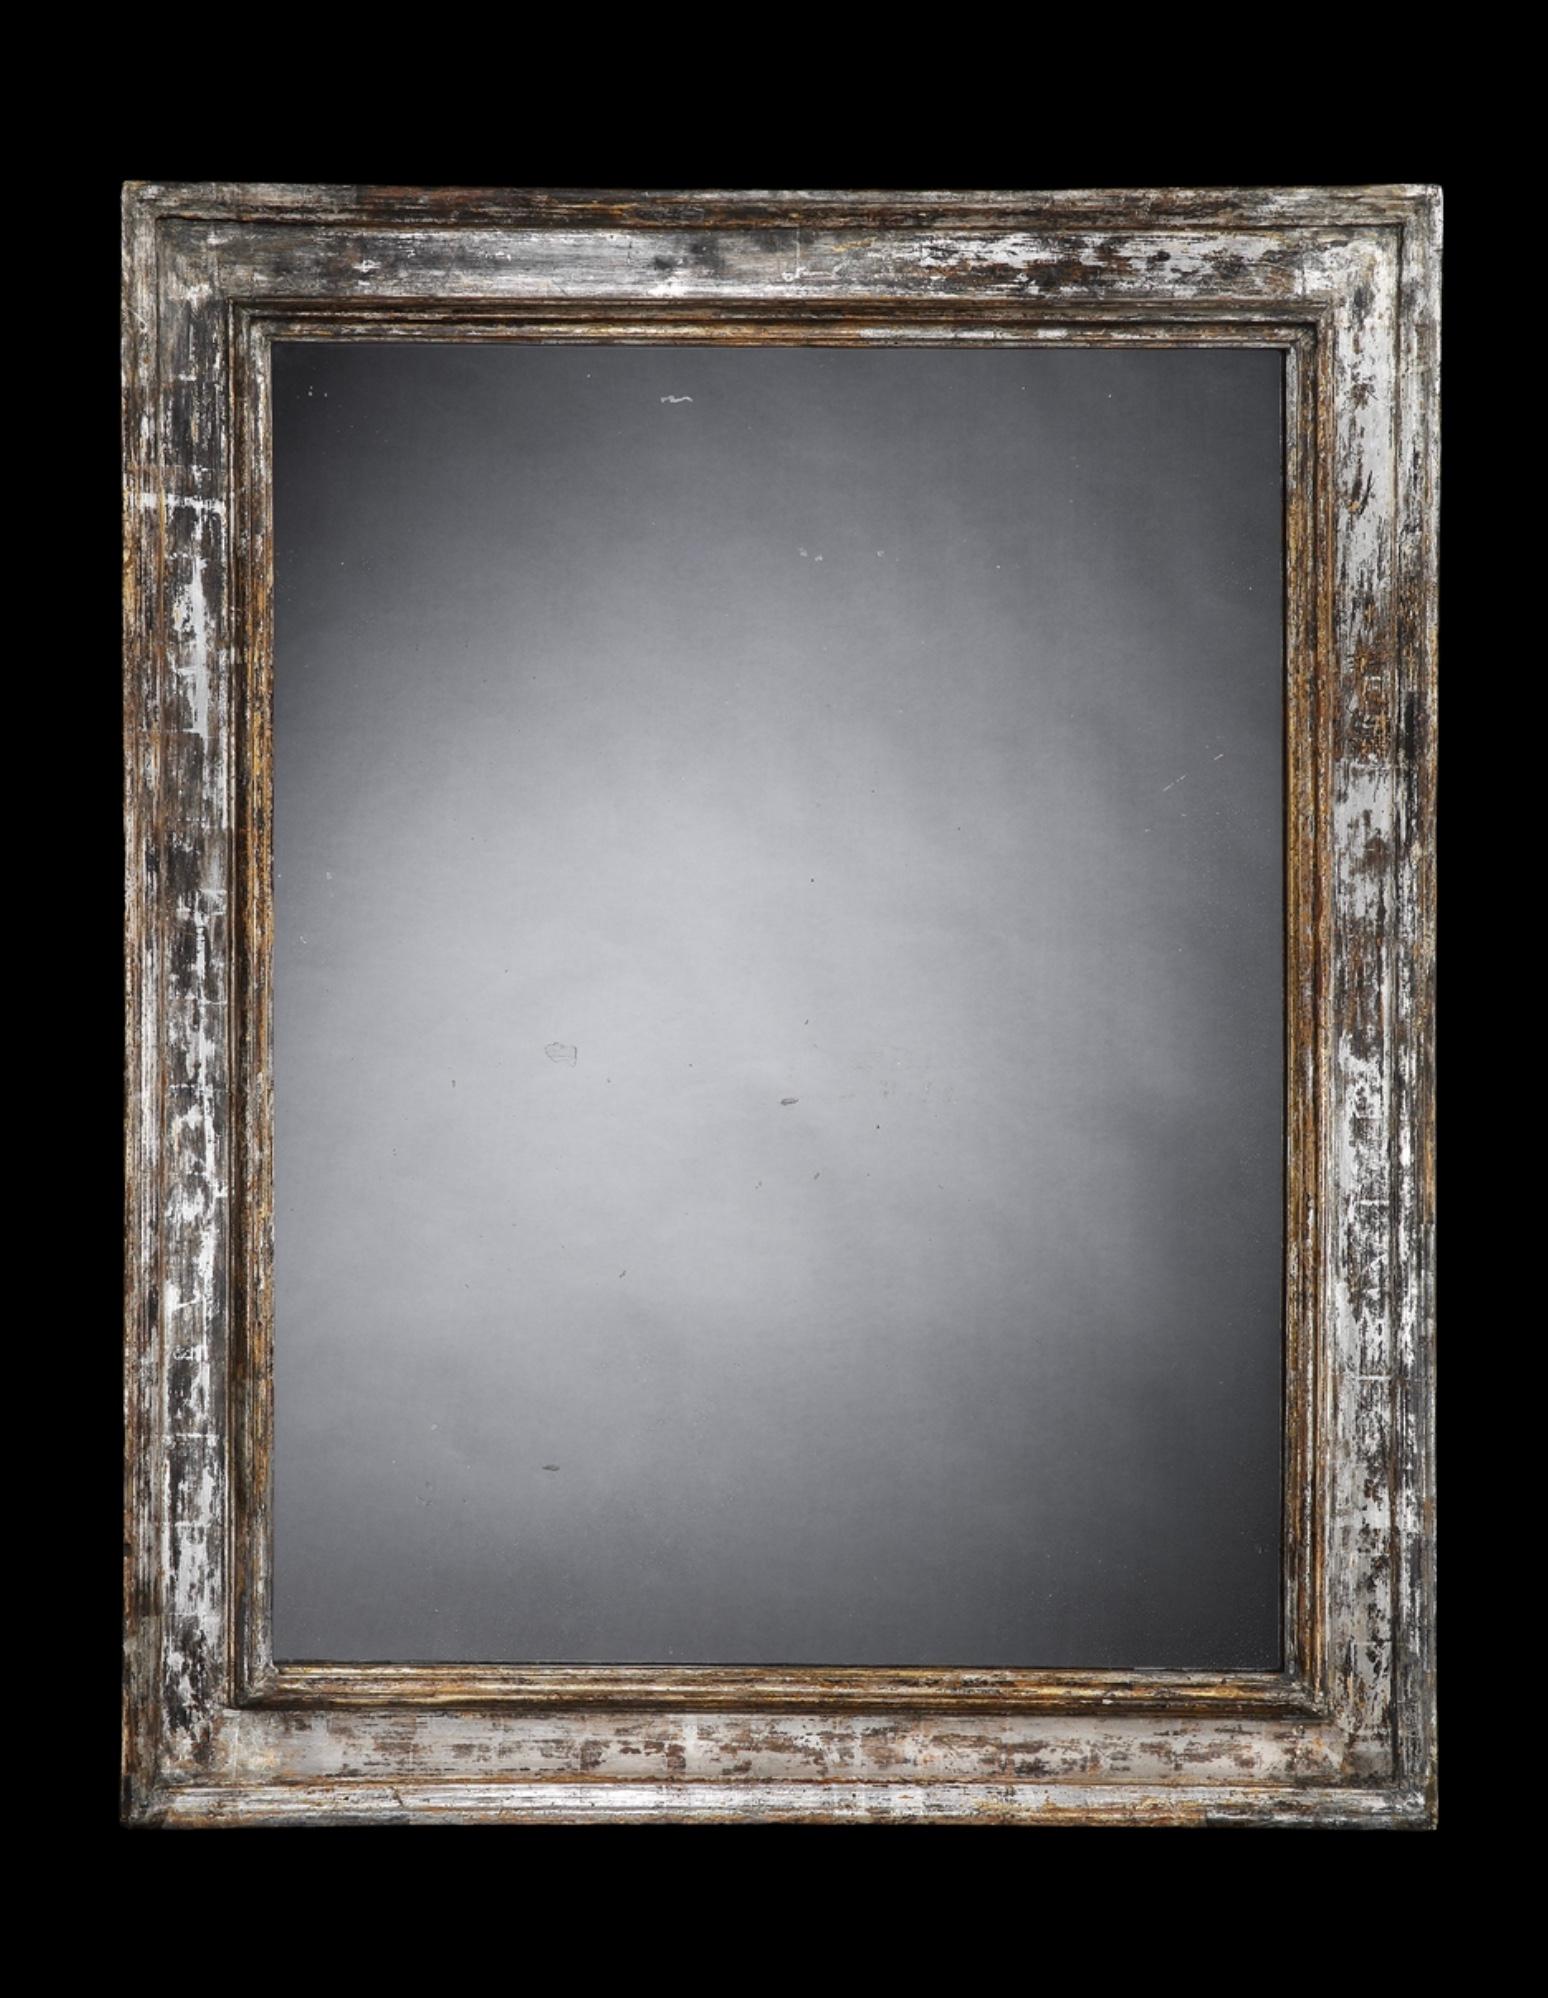 Très beau cadre rectangulaire italien en feuilles d'argent de la fin du XVIIe siècle et du début du XVIIIe siècle, avec des détails moulés en relief,
Cette plaque de miroir antique est d'une grande beauté.